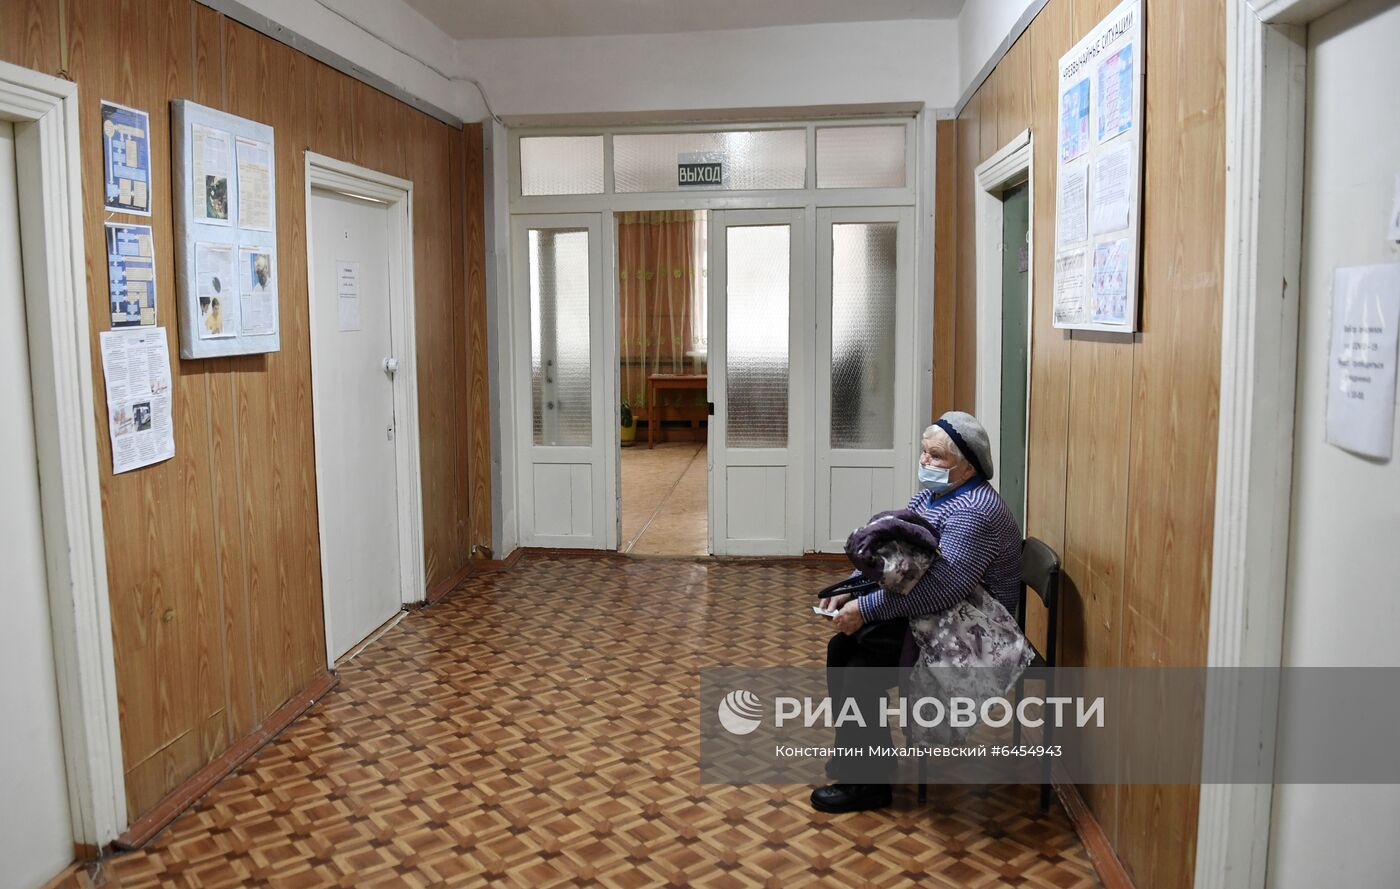 Деревенские поликлиники в Крыму